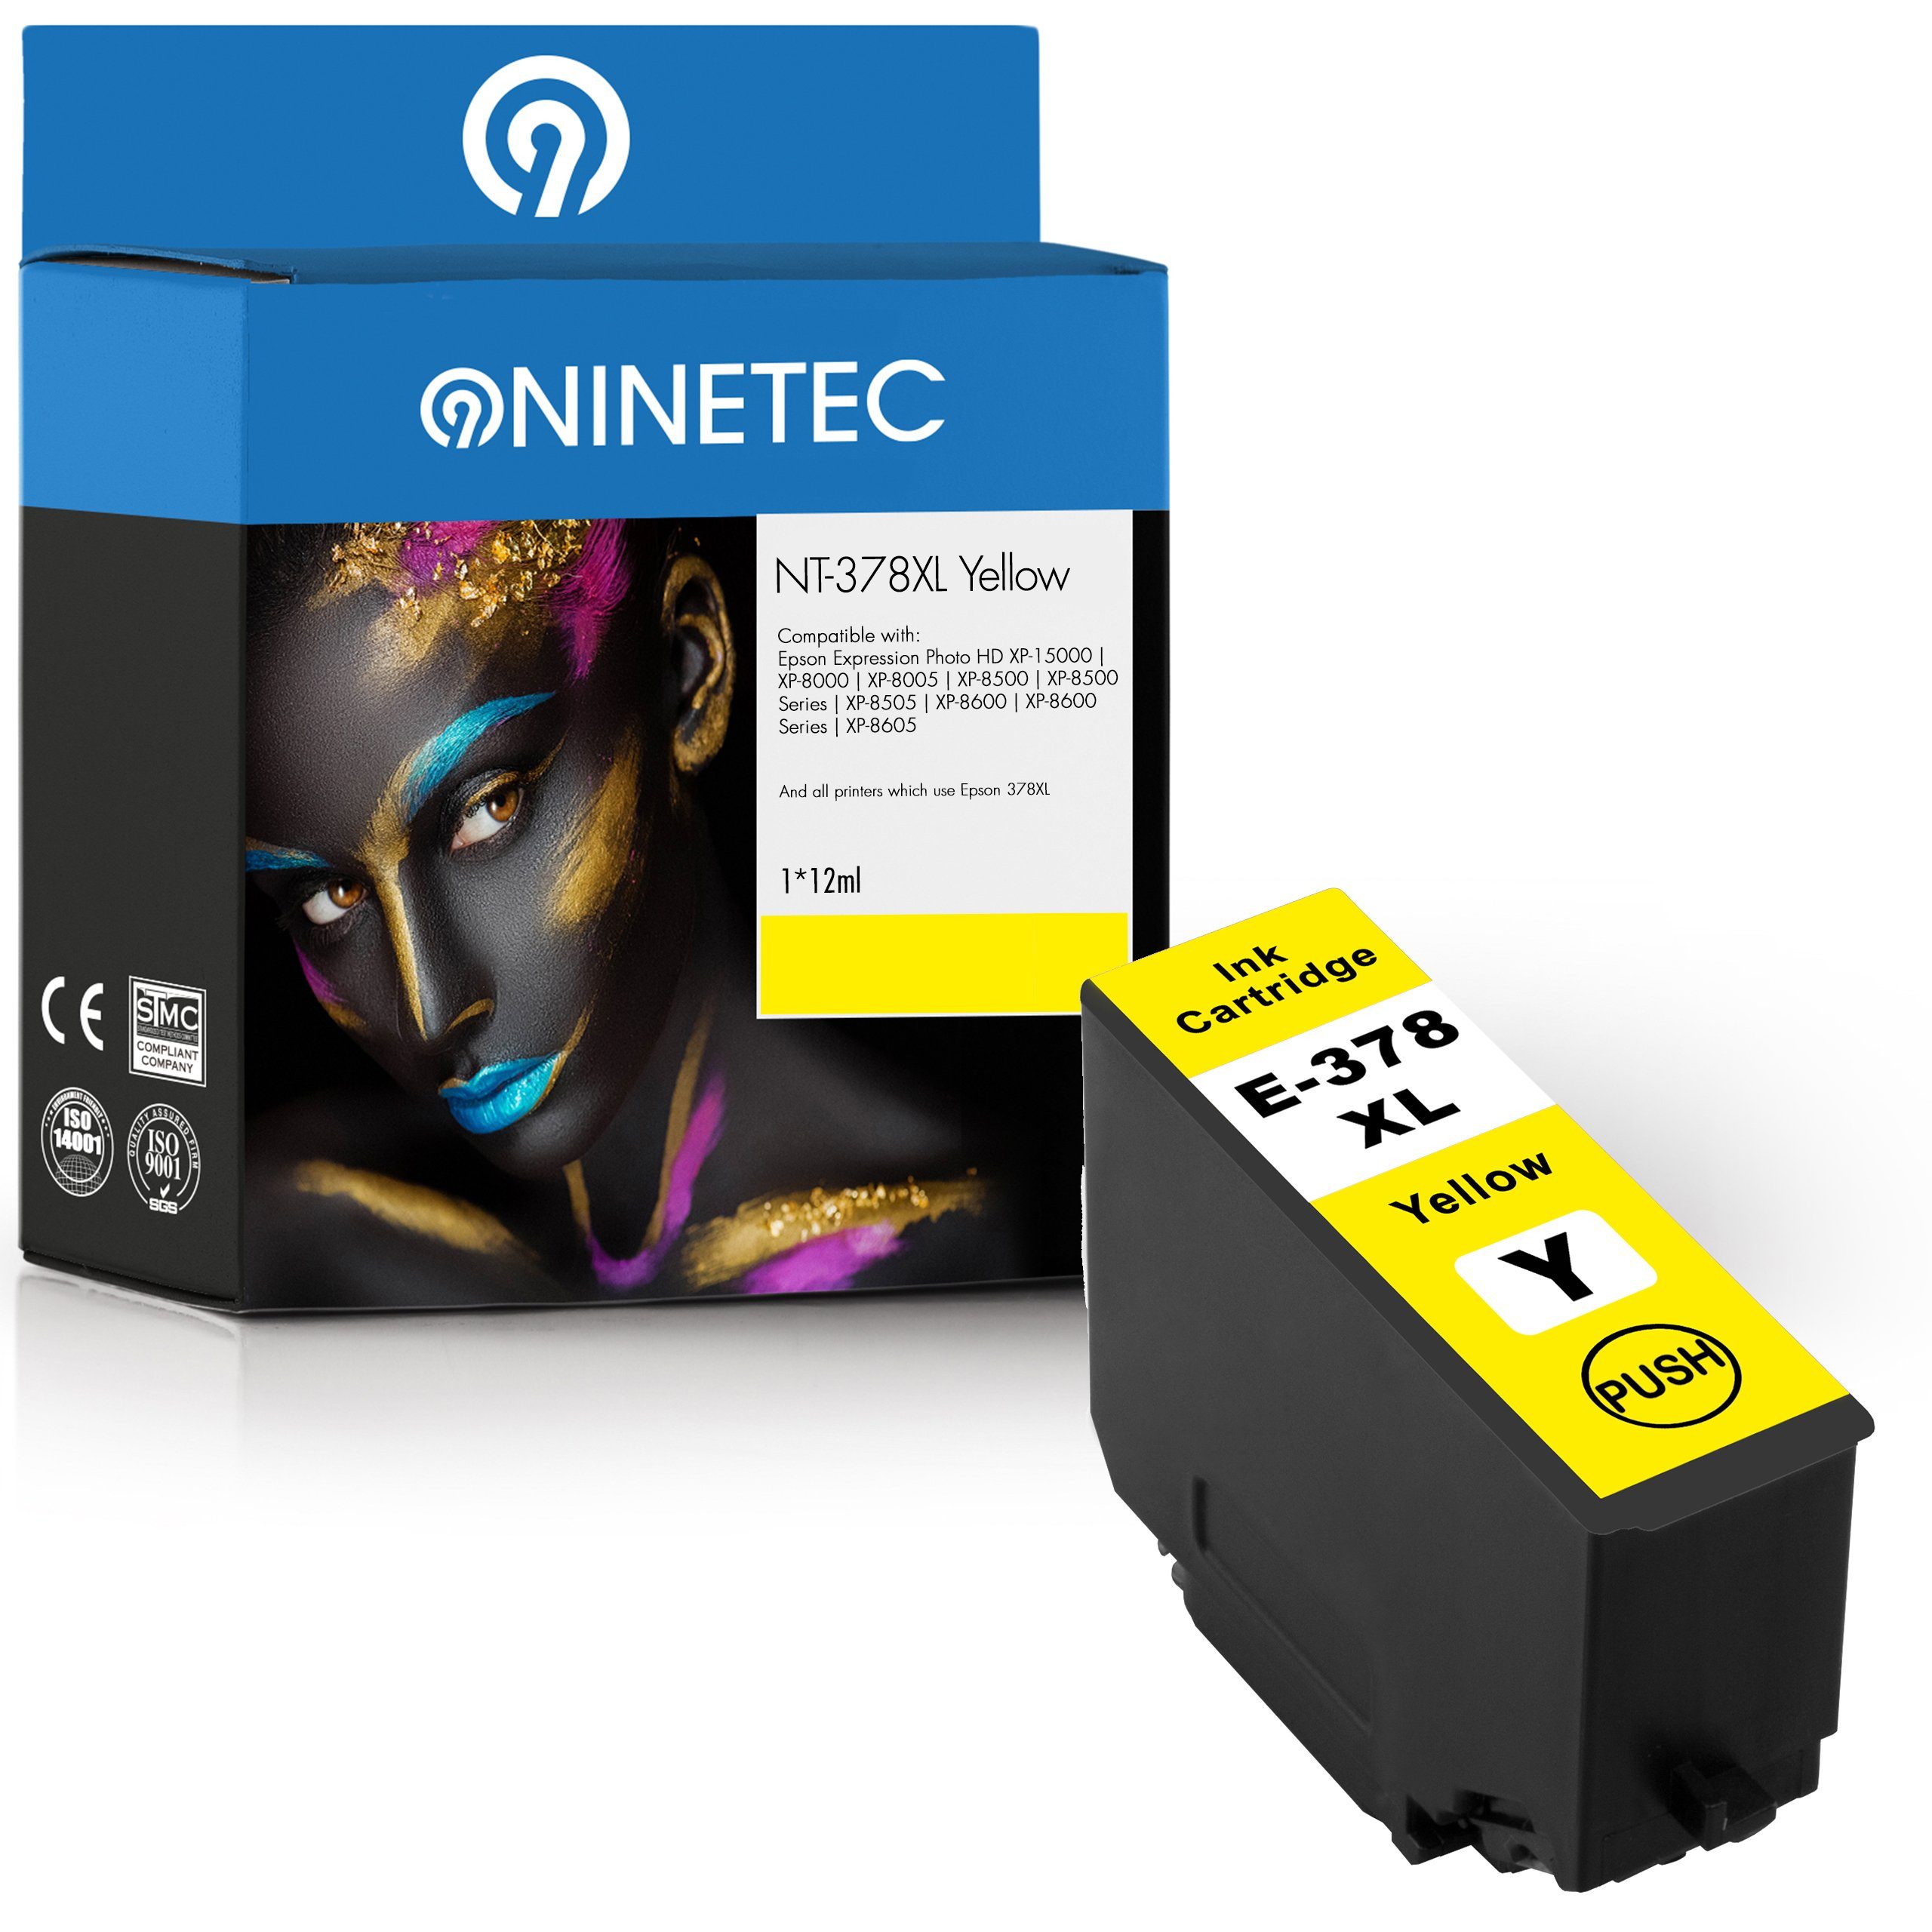 T3794 Epson ersetzt Tintenpatrone Yellow 378XL NINETEC